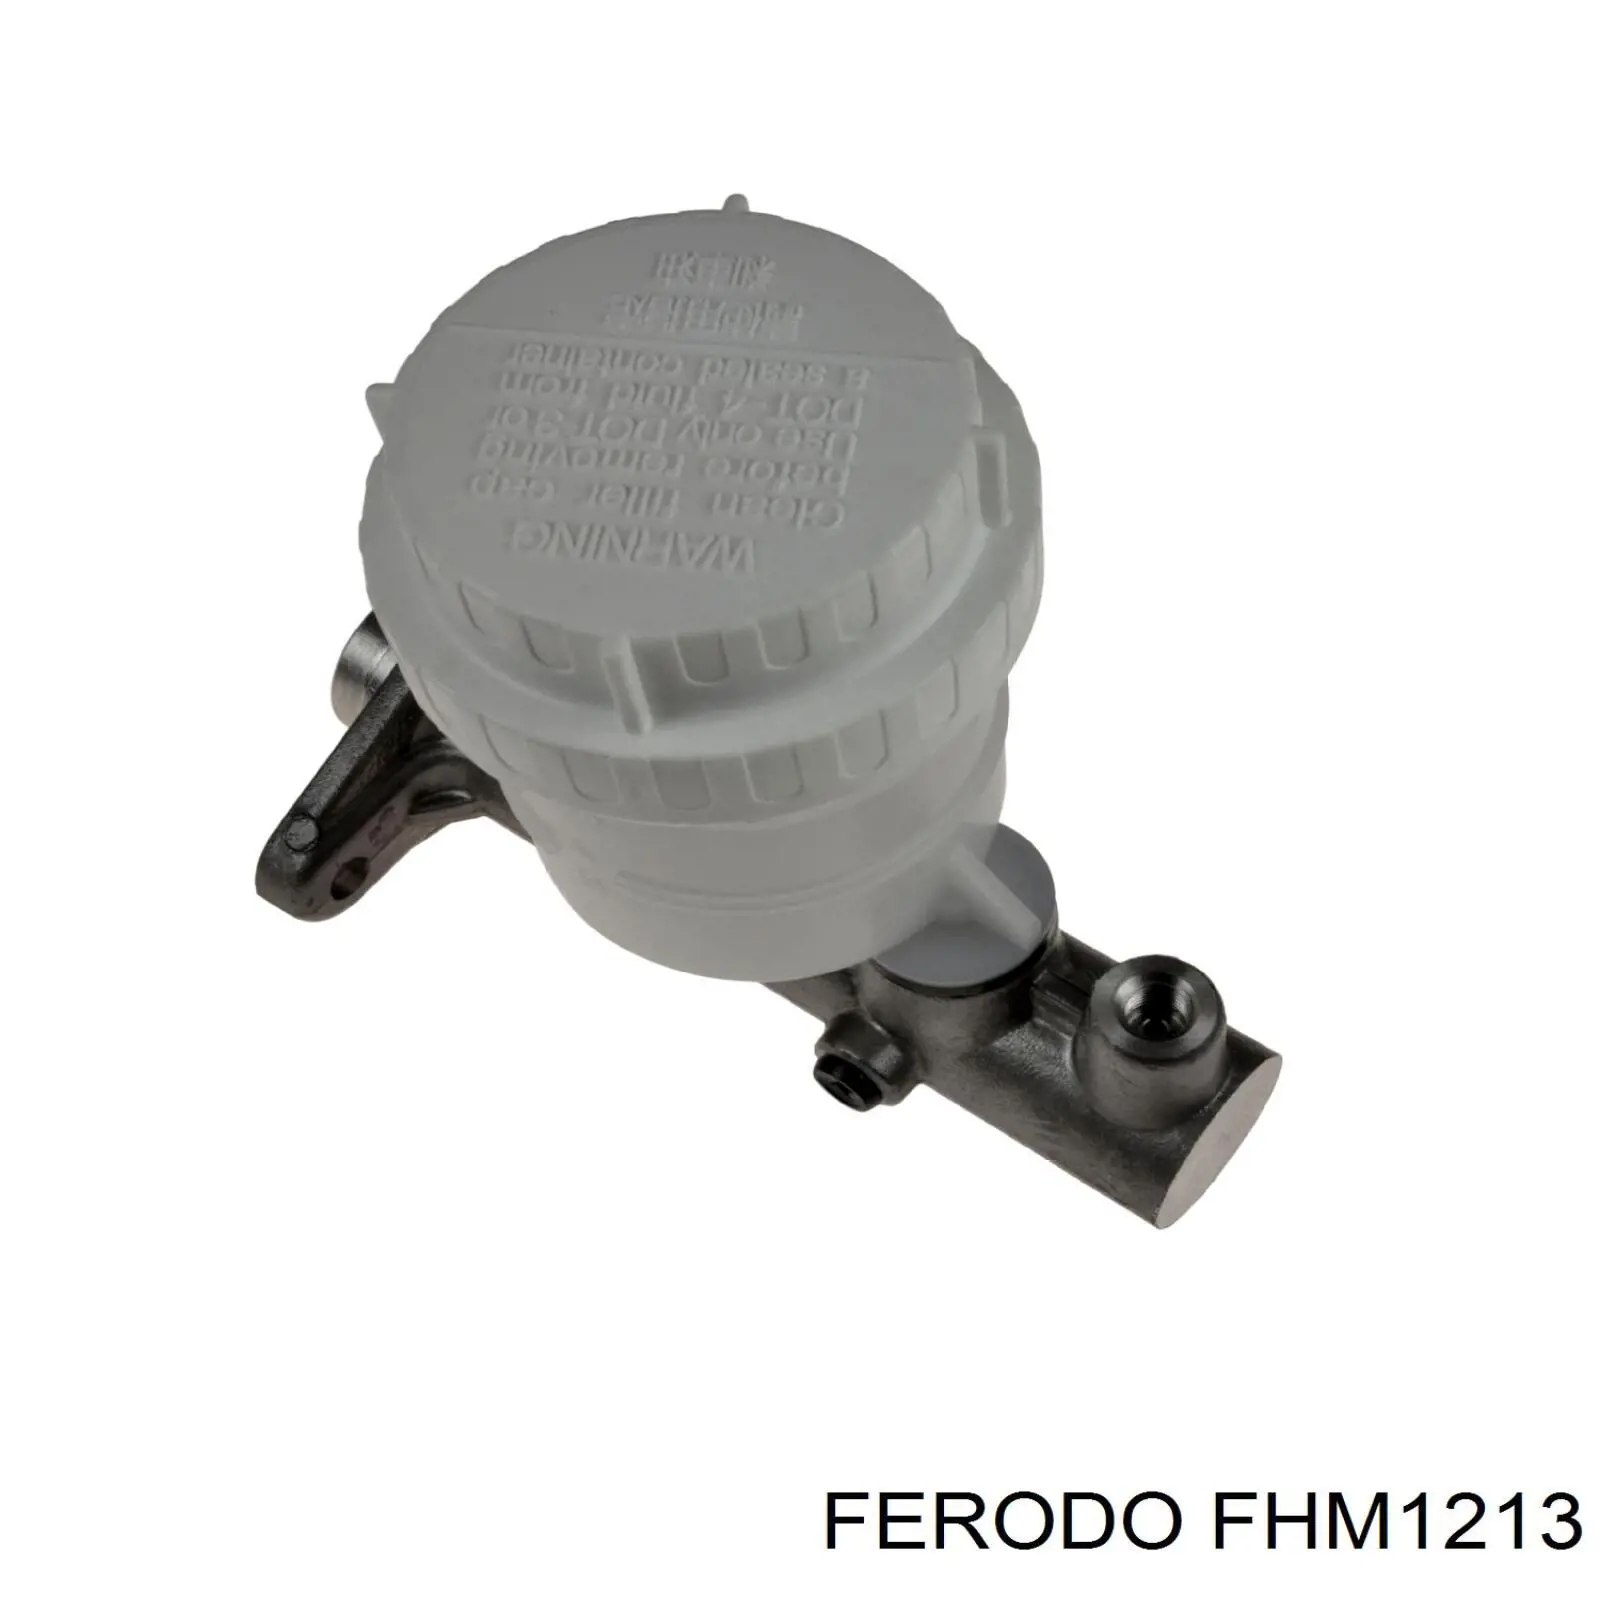 FHM1213 Ferodo bomba de freno